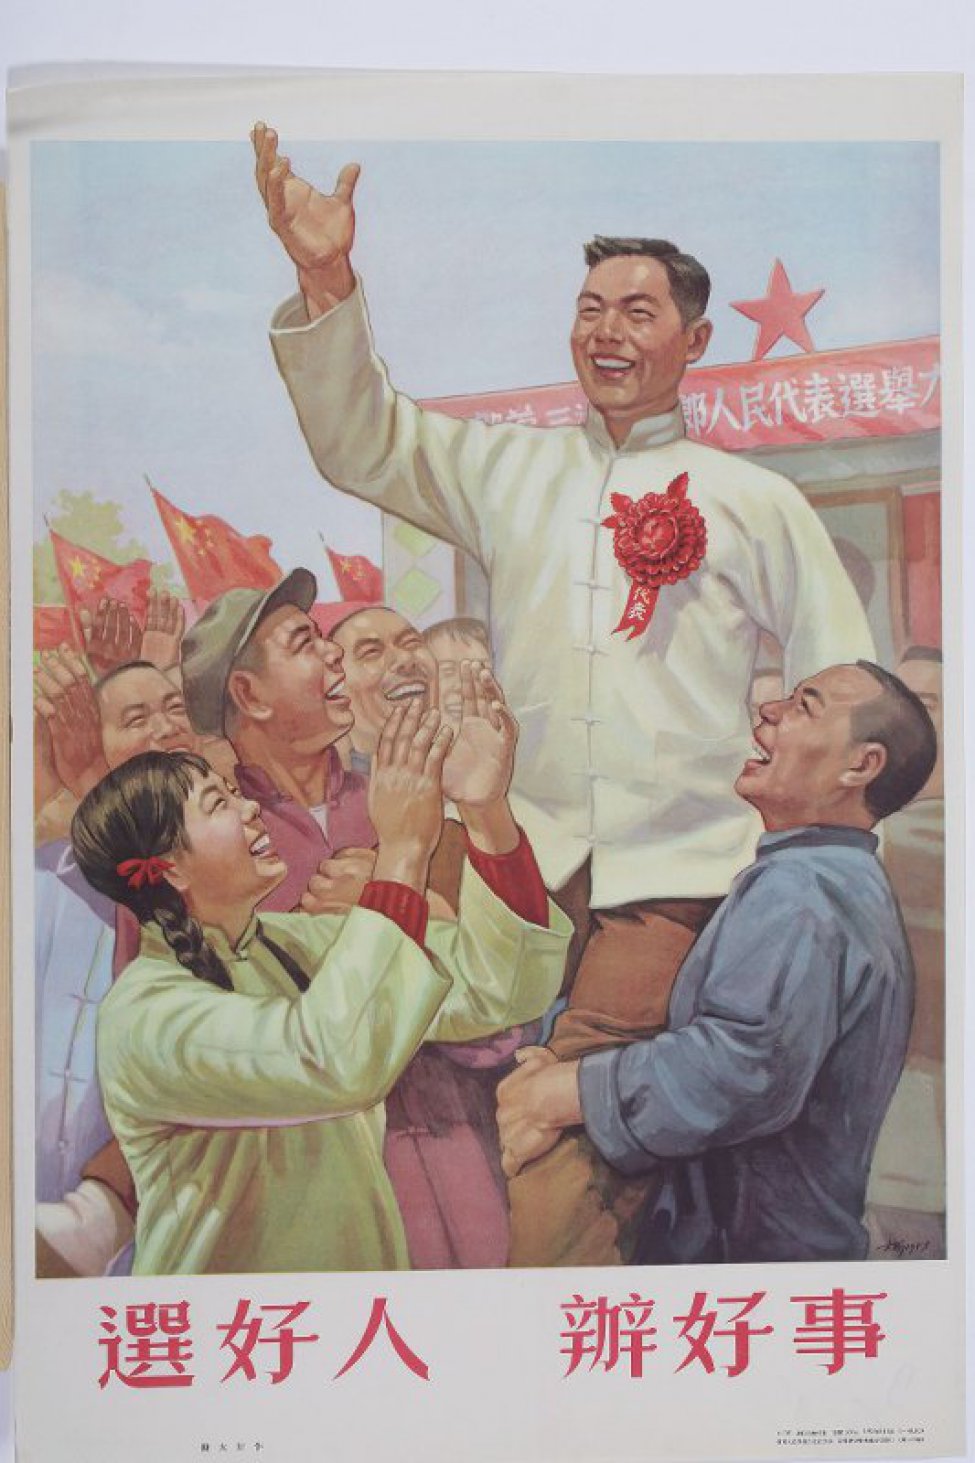 Изображена группа улыбающихся китайских мужчин и девушка, они подняли на руки мужчину с красным цветком и ленточкой на груди. Под плакатом текст из шести иероглифов.